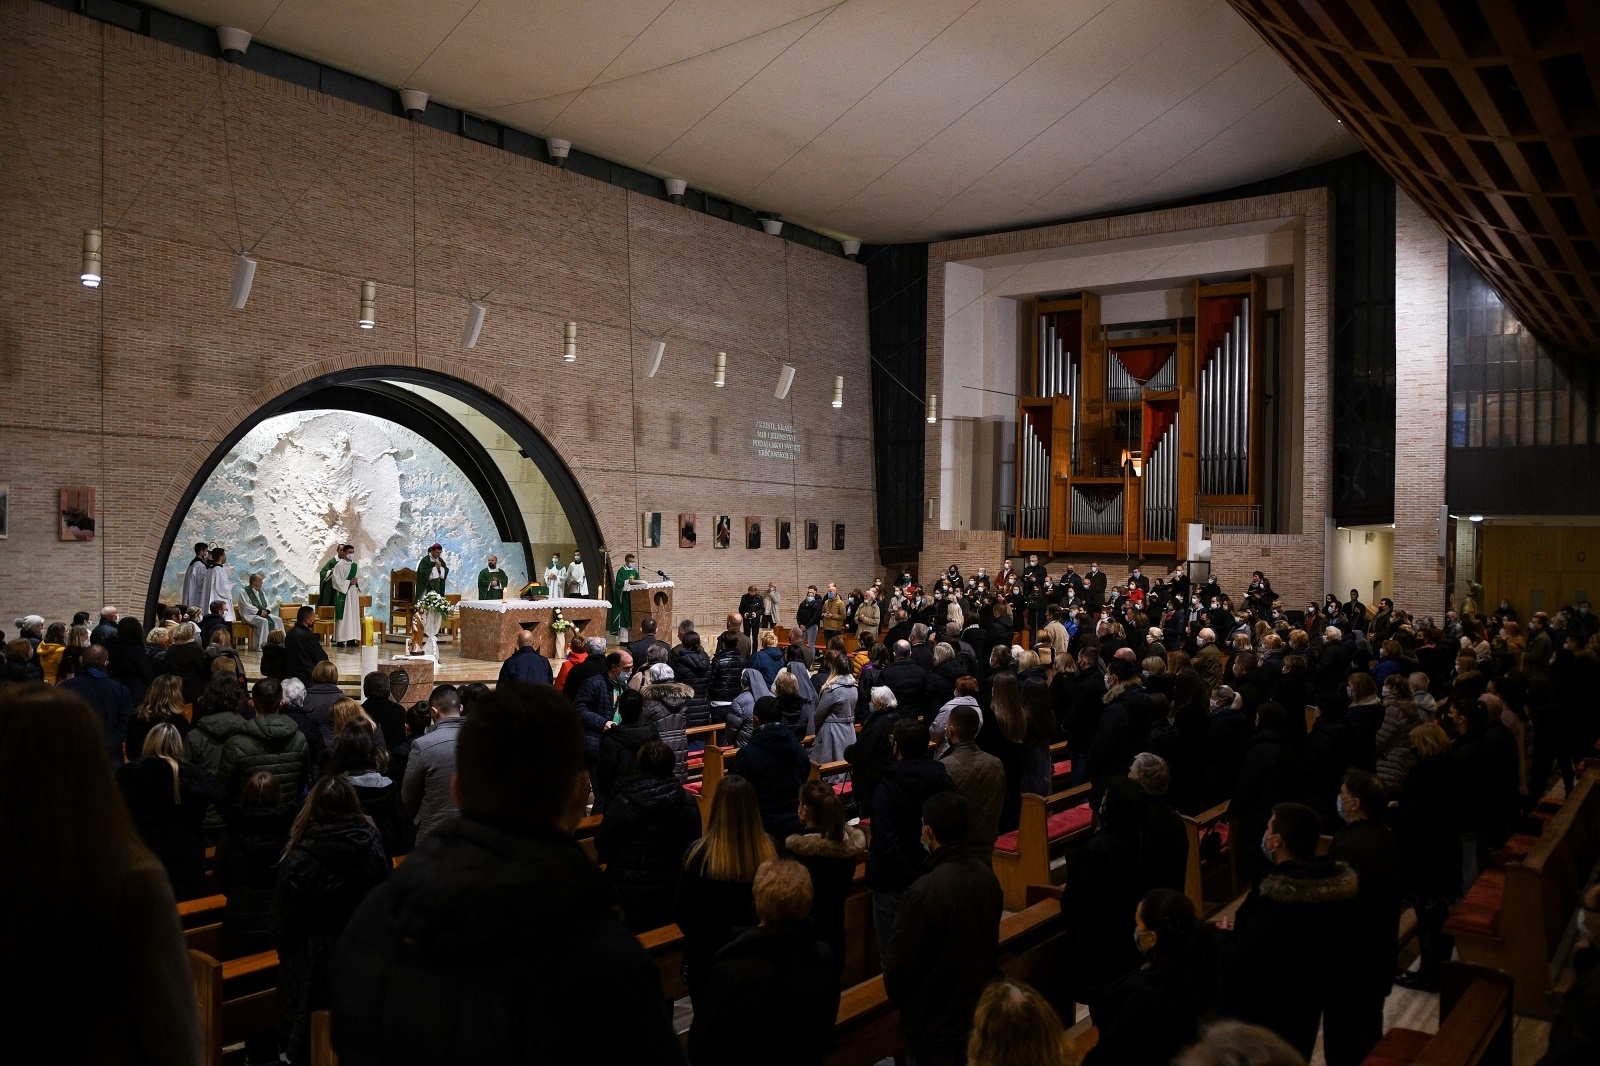 18.11.2020., Zagreb - Crkva Sveta Mati Slobode u kojoj je sluzena misa za stradale u Vukovaru, Skabrnji i Domovini.
Photo: Zoe Sarlija/PIXSELL